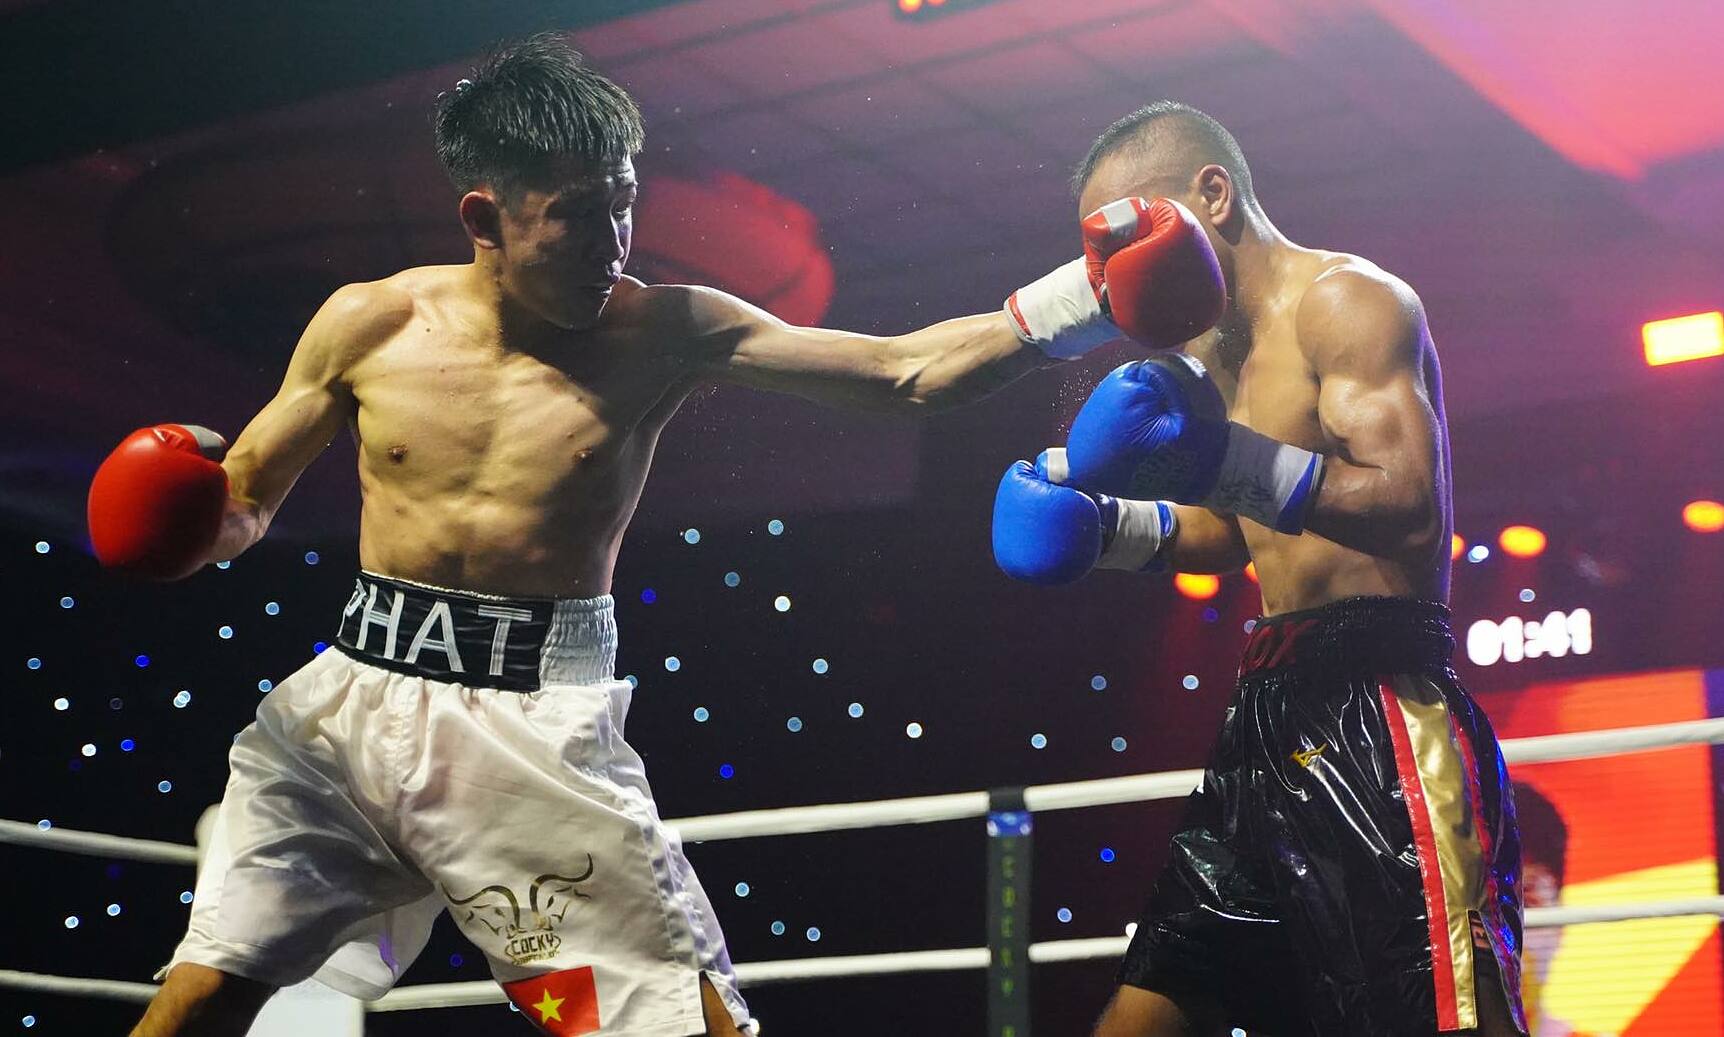 Võ sĩ Nguyễn Văn Hải thắng knock-out chỉ sau 12 giây - VnExpress Thể thao